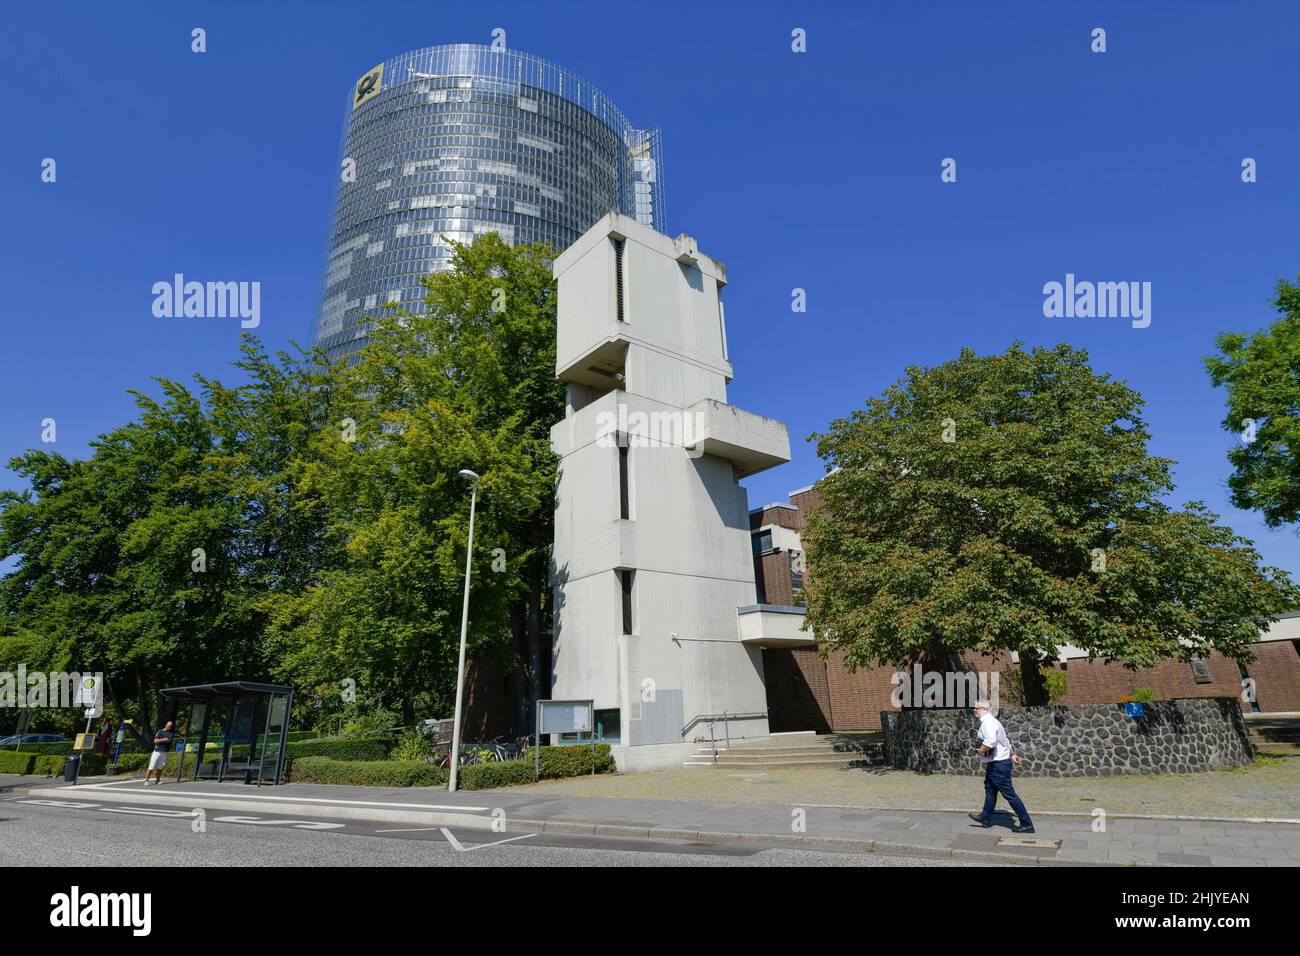 Katholische Kirche Sankt Winfried, Post Tower, der Konzernzentrale der Deutsche Post DHL Charles-de-Gaulle-Stra ße, Bonn, Nordrhein-Westfalen,,Deuts Stockfoto